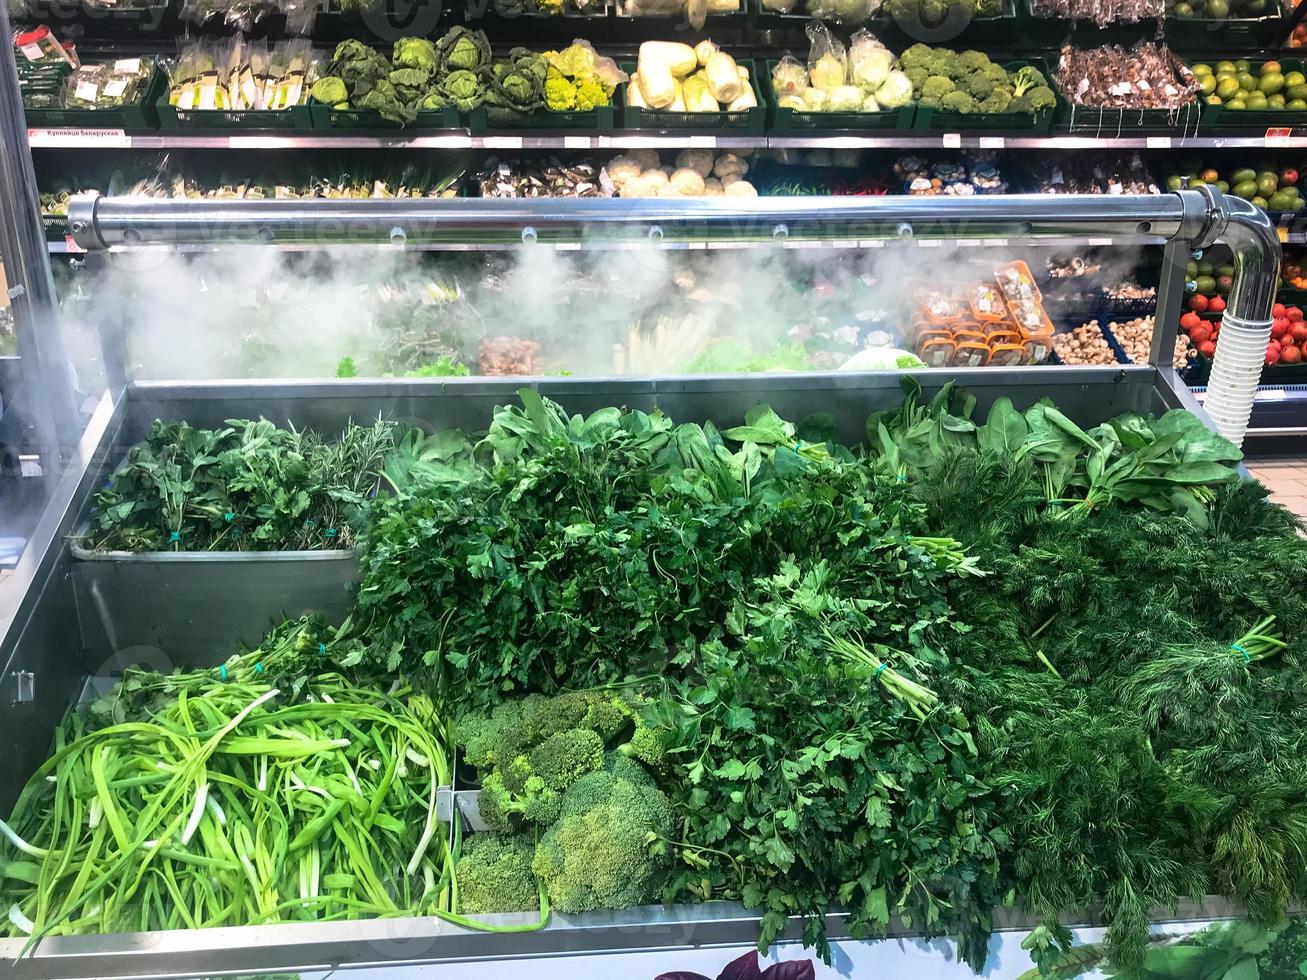 grünes frisches umweltfreundliches grün von petersilienpflanzen dillsalat rucola zwiebeln und anderen pflanzlichen lebensmitteln liegt in einem modernen kühlschrank in einem supermarkt auf der theke. der Hintergrund foto